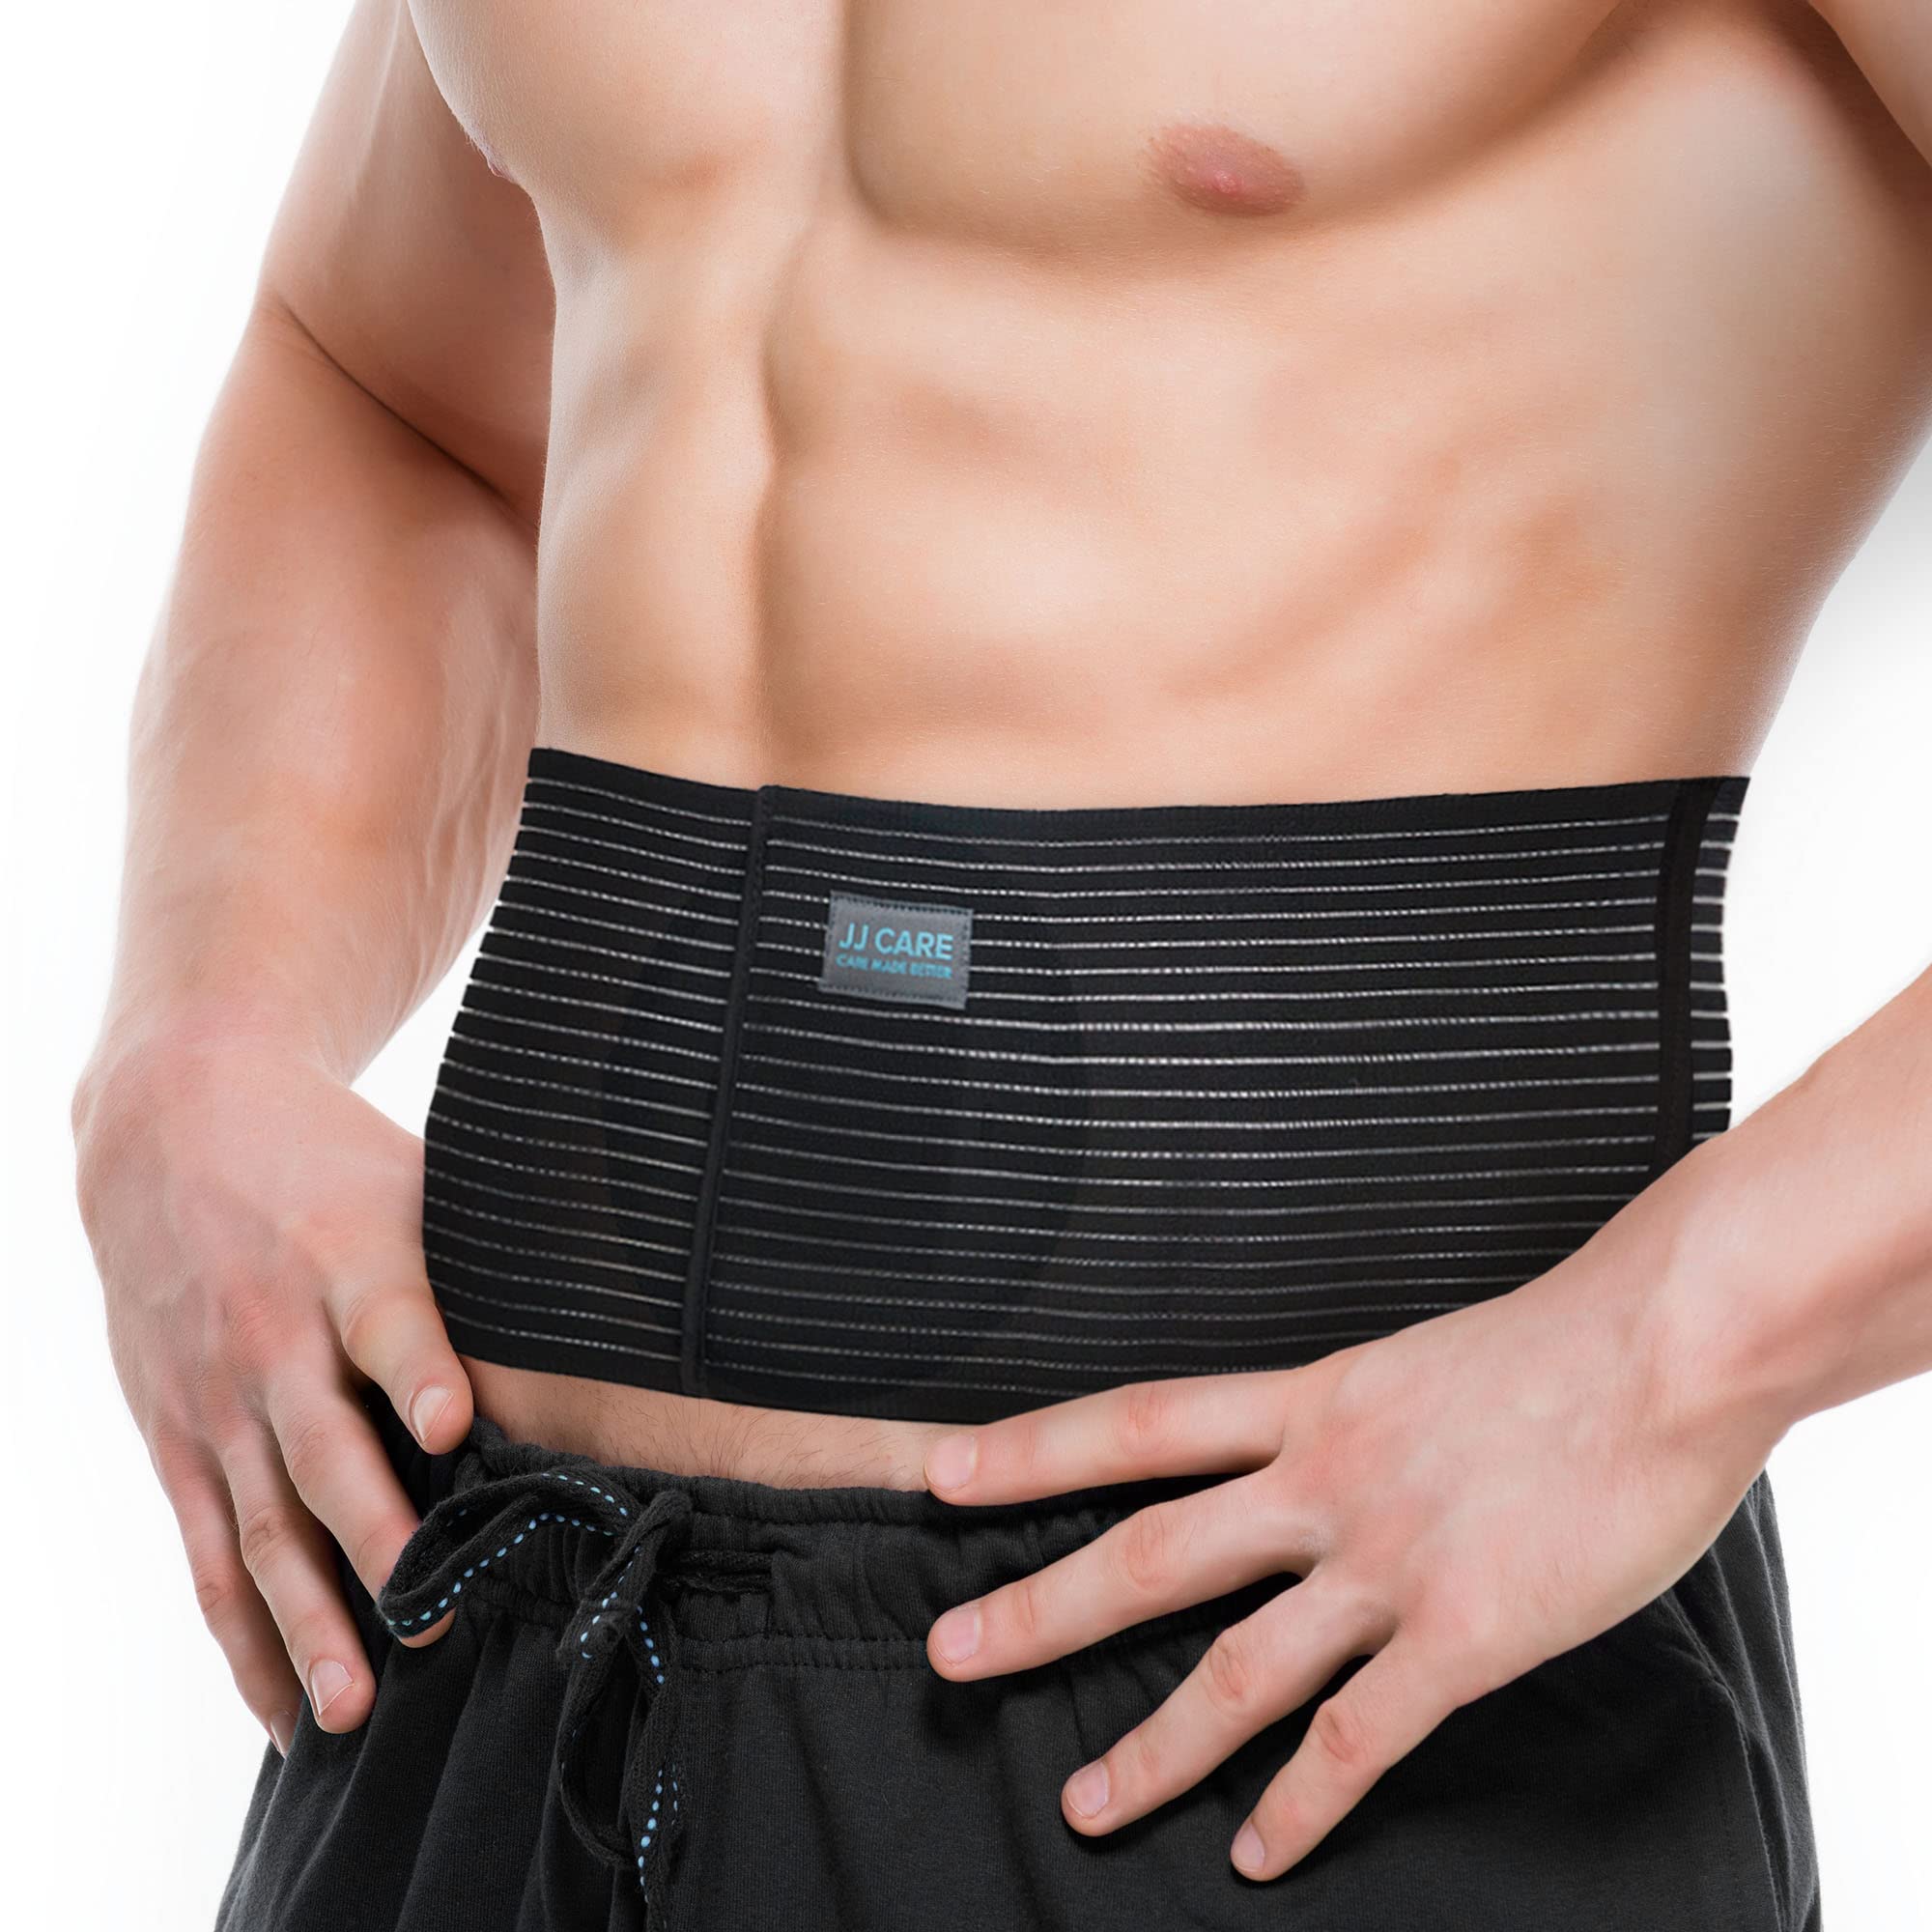 JJ CARE Umbilical Hernia Belt for Men & Women